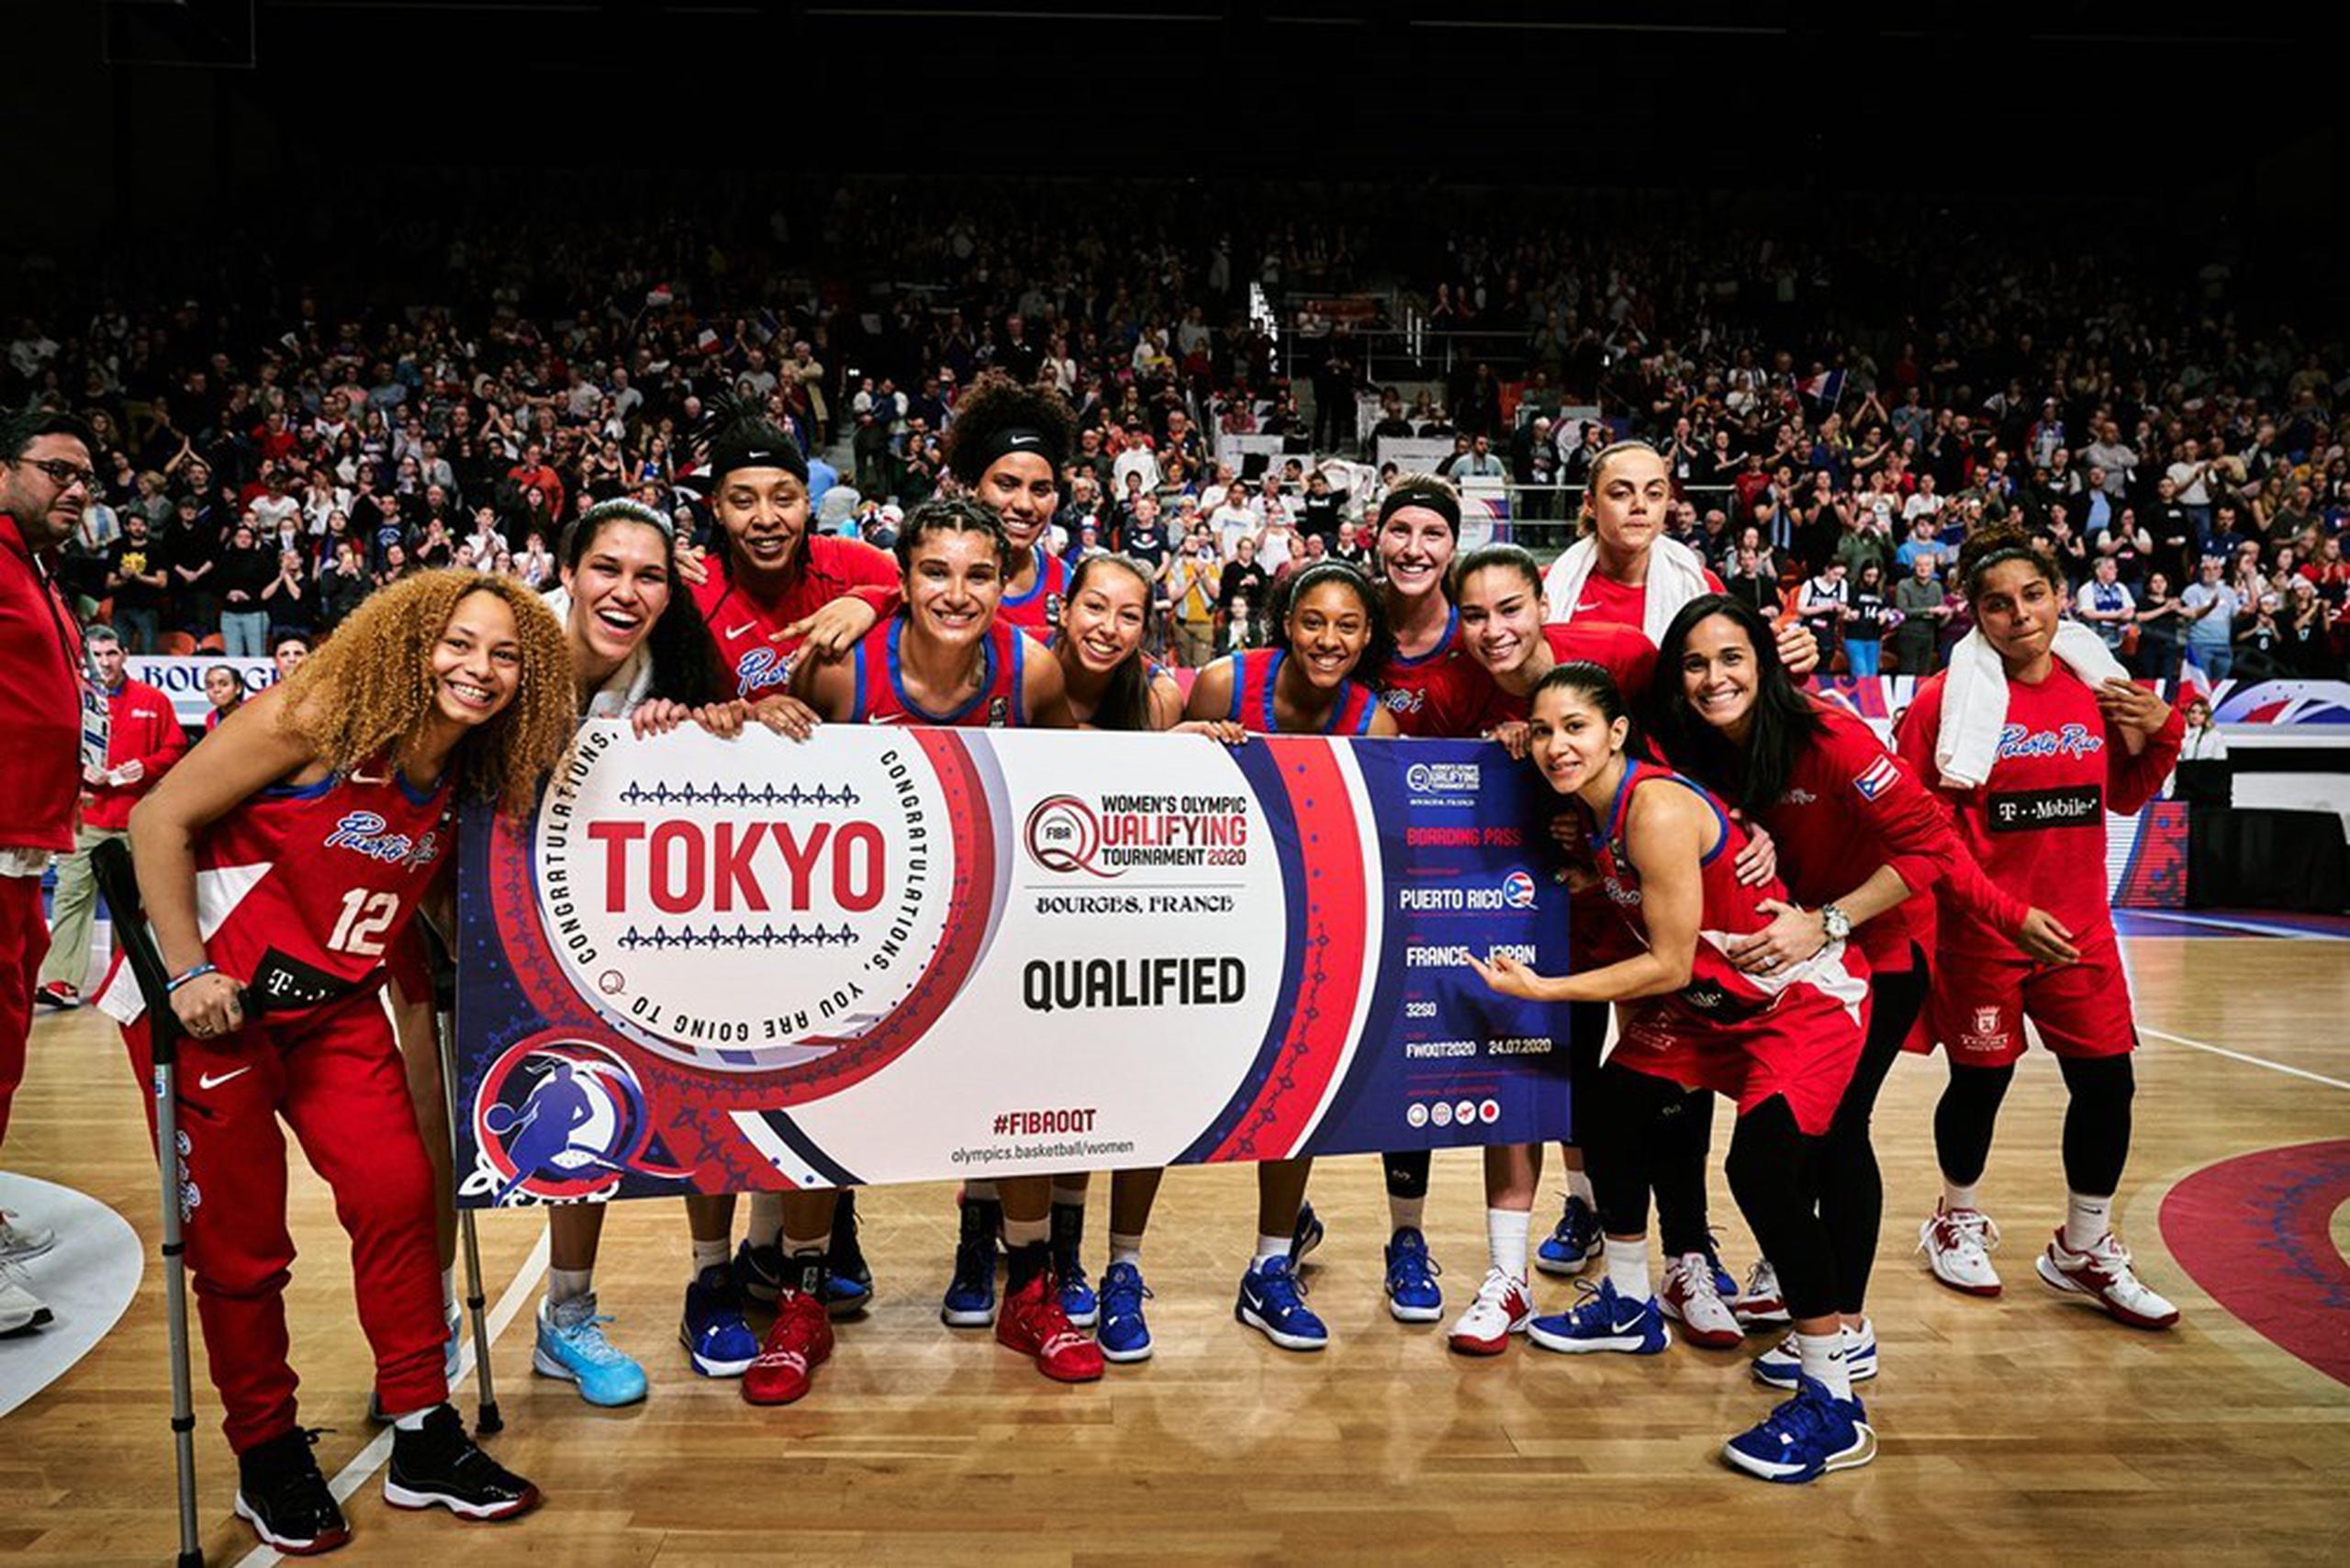 Las boricuas lograron su boleto a Tokio 2020 en el Preolímpico de baloncesto femenino celebrado en Francia el fin de semana pasado. (Suministrada / FIBA)